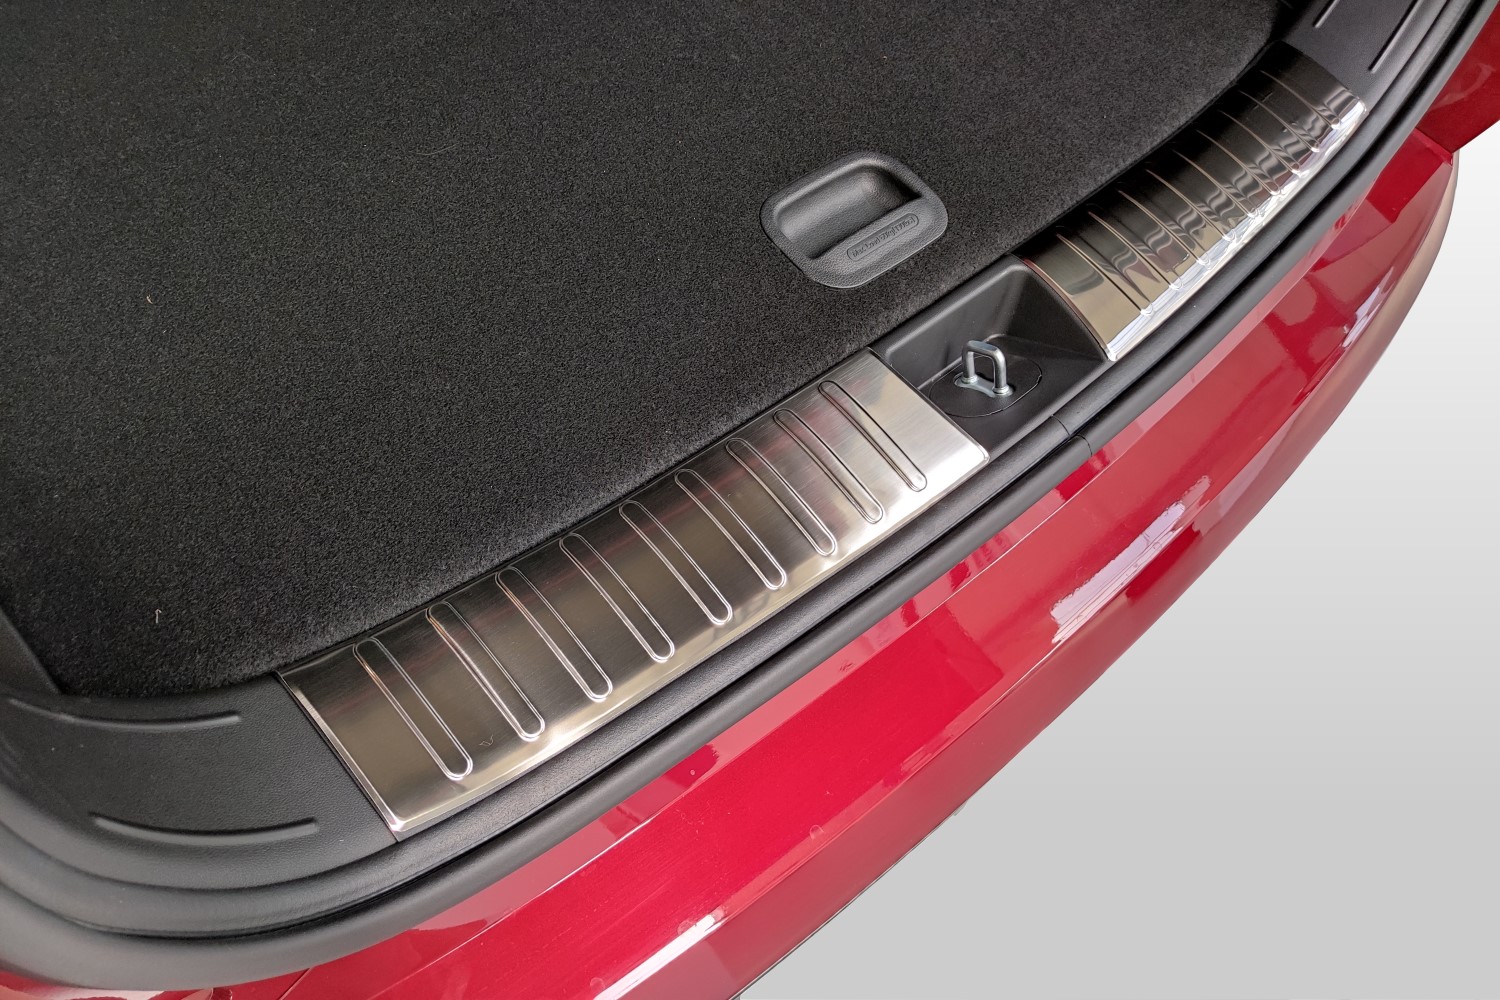 Boot mat Hyundai Tucson (NX4) 2020-present Cool Liner anti slip PE/TPE  rubber